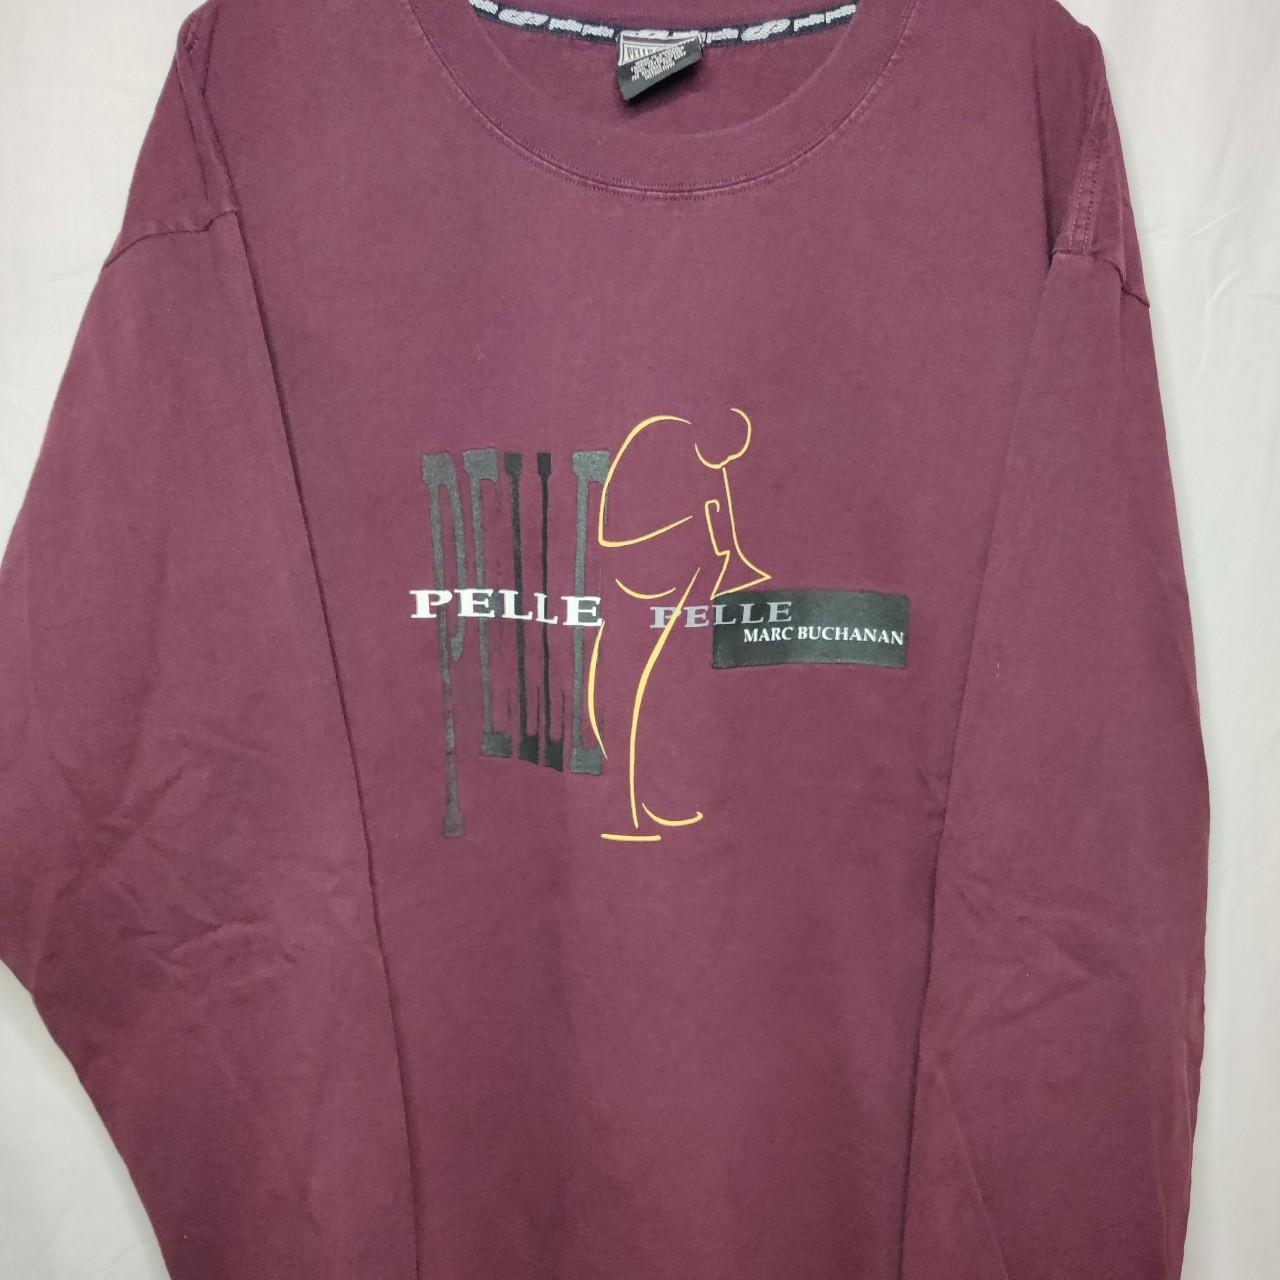 Pelle Pelle Men's Burgundy T-shirt